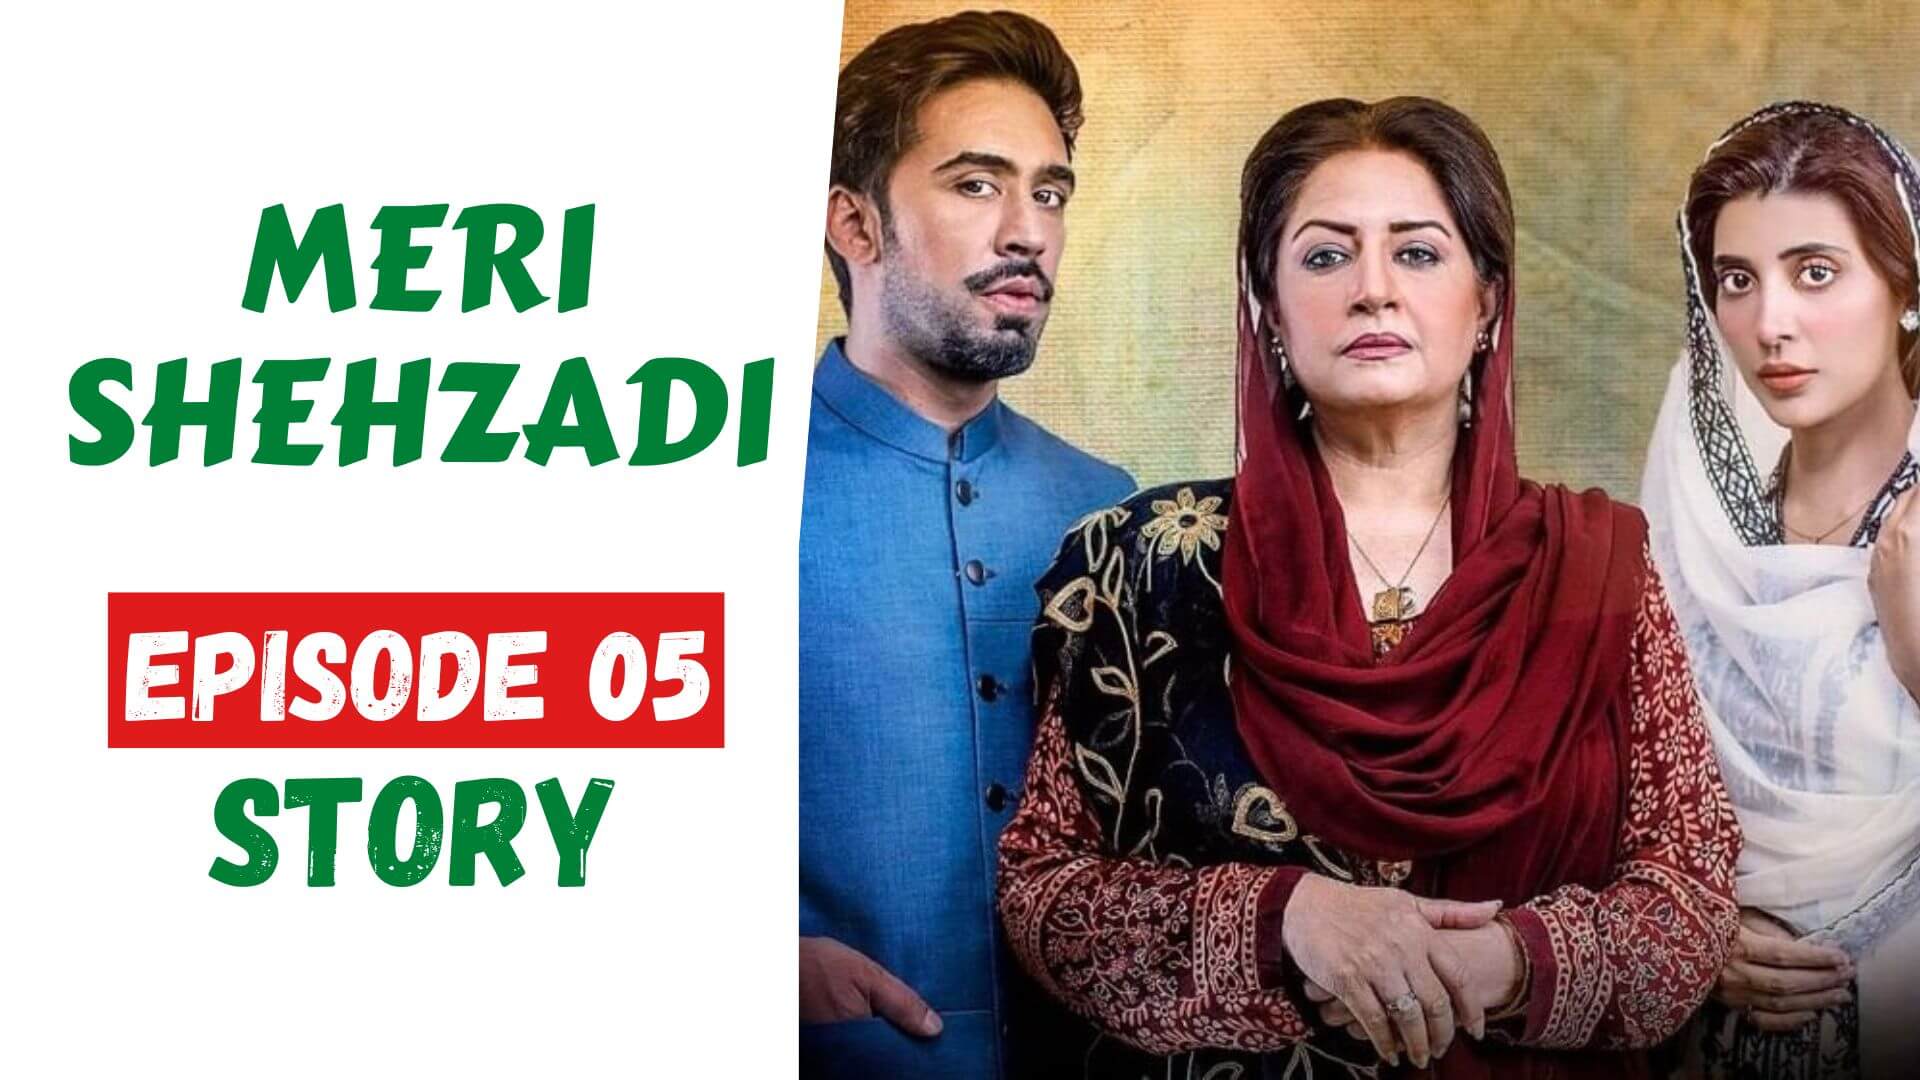 Meri Shehzadi Episode 05 Story